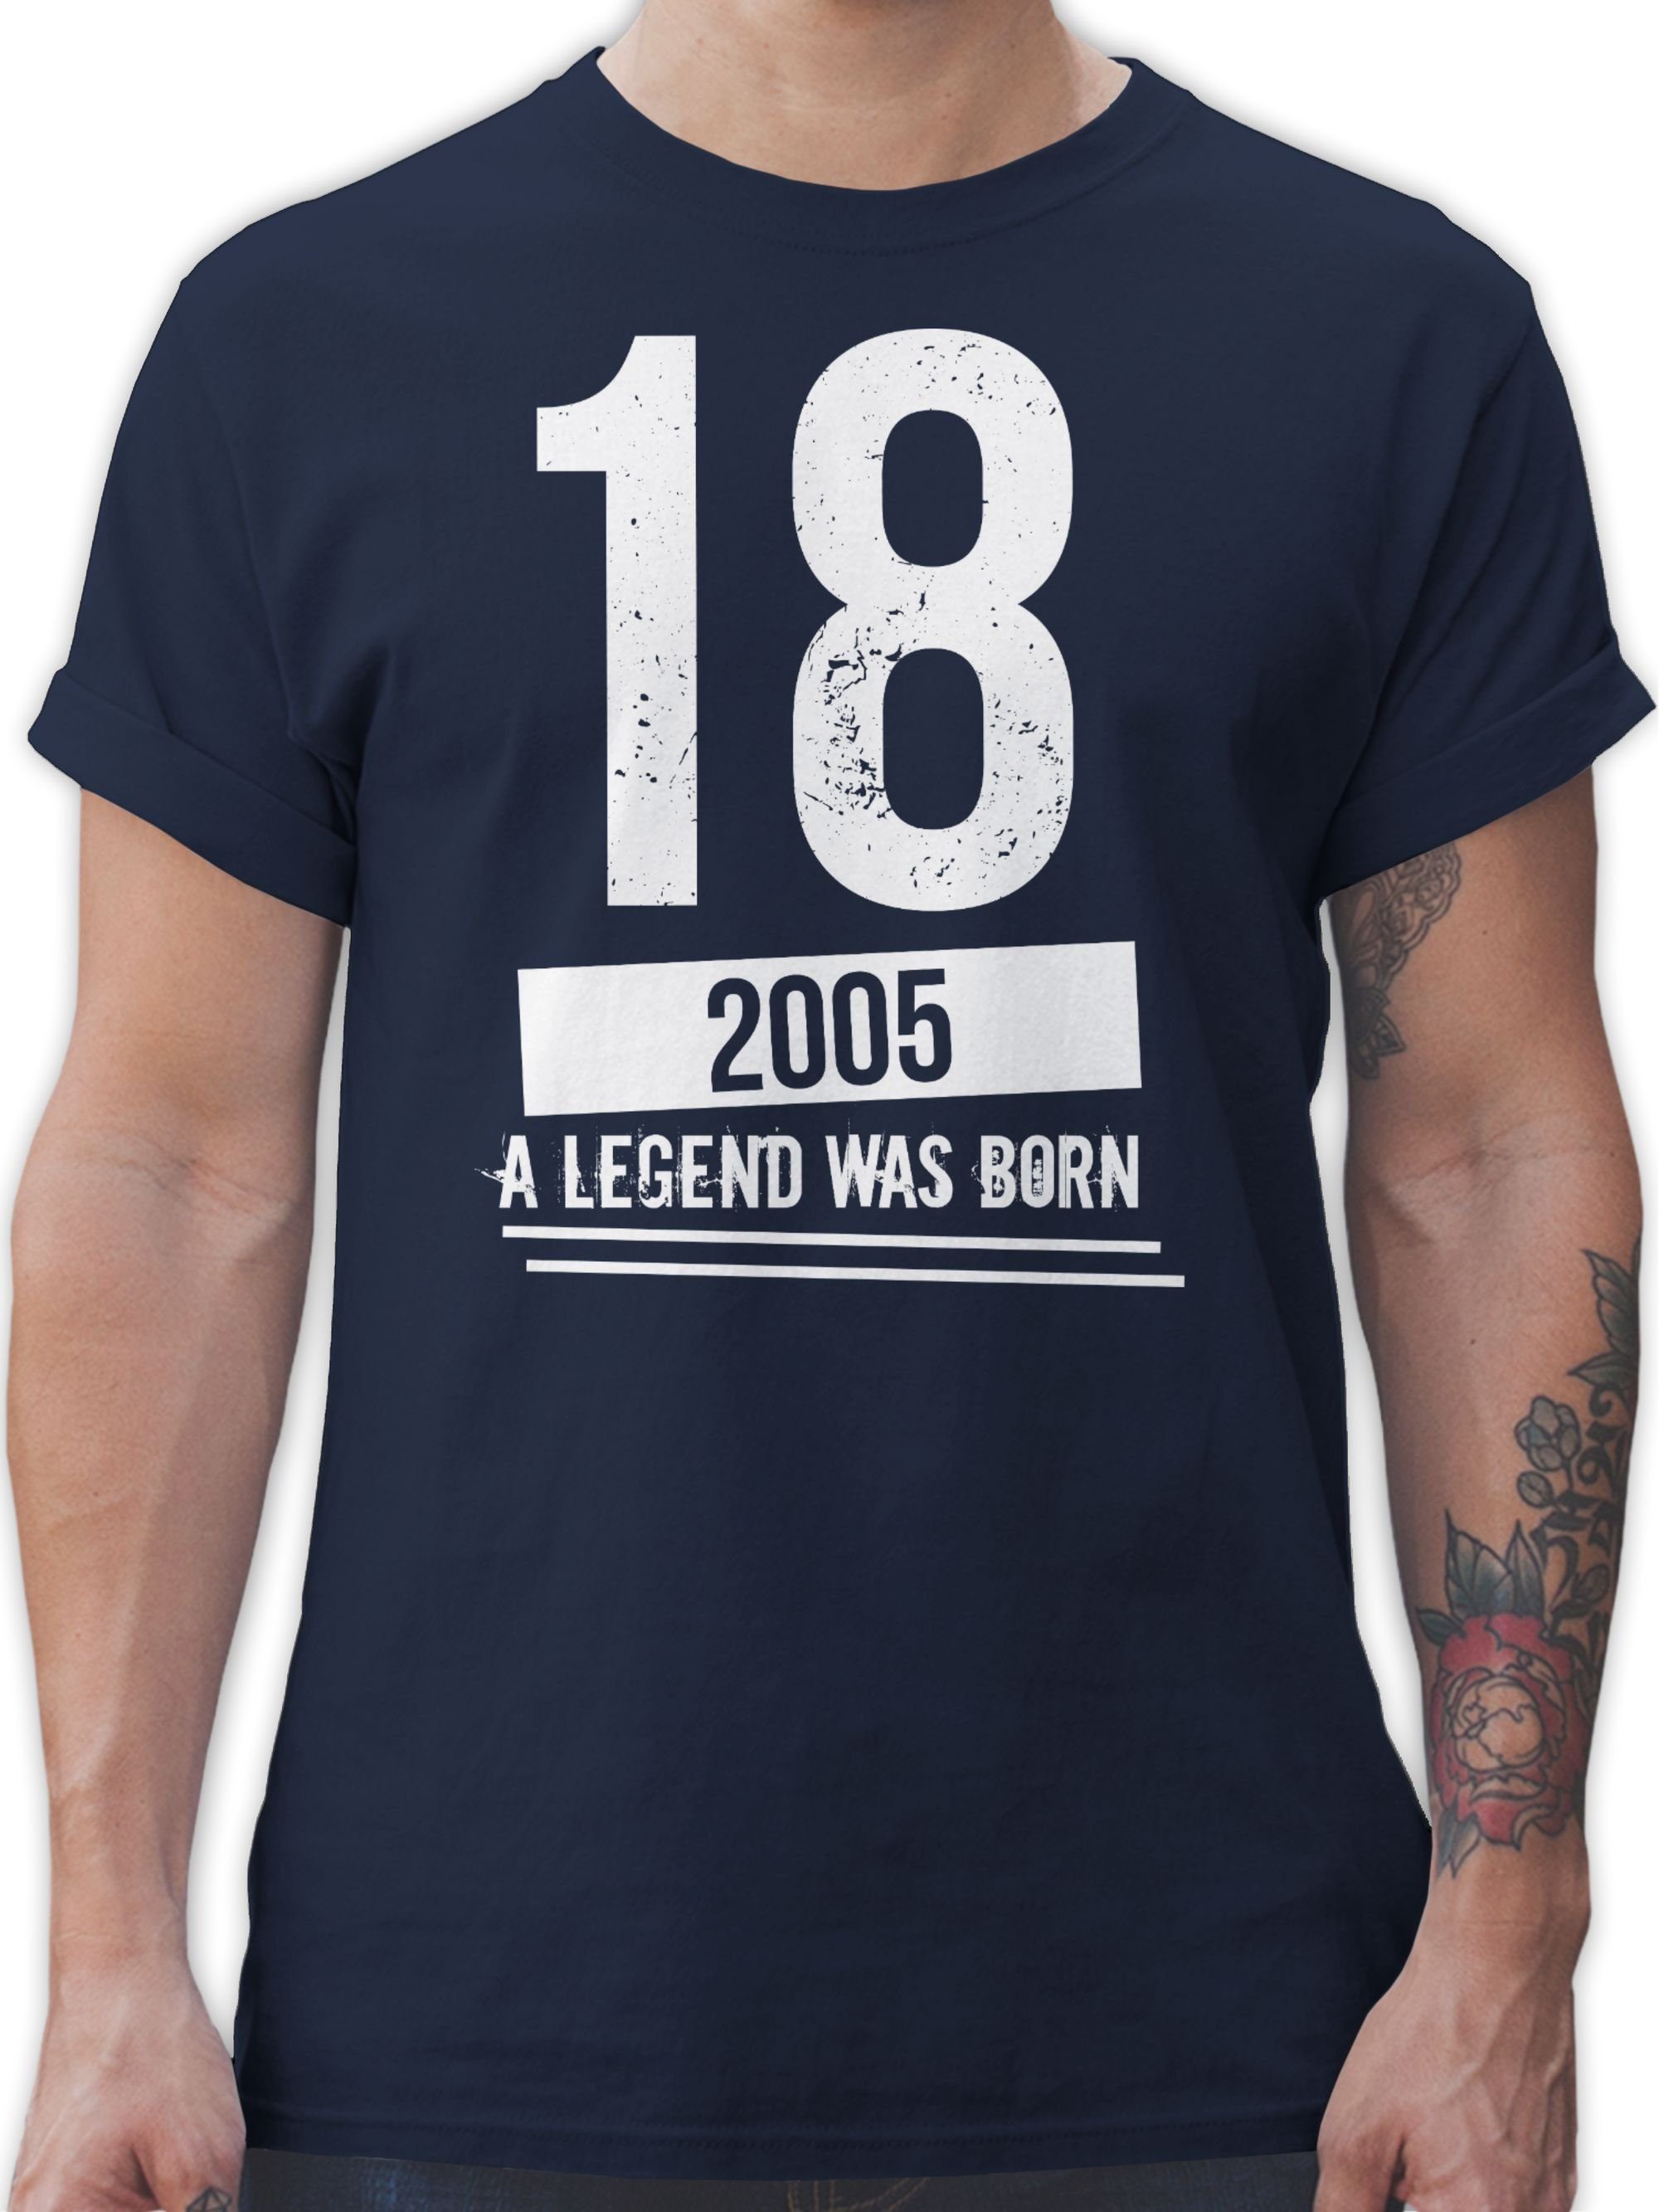 02 T-Shirt Geburtstag 2005 18. Geburtstag Navy Blau Shirtracer Achtzehnter